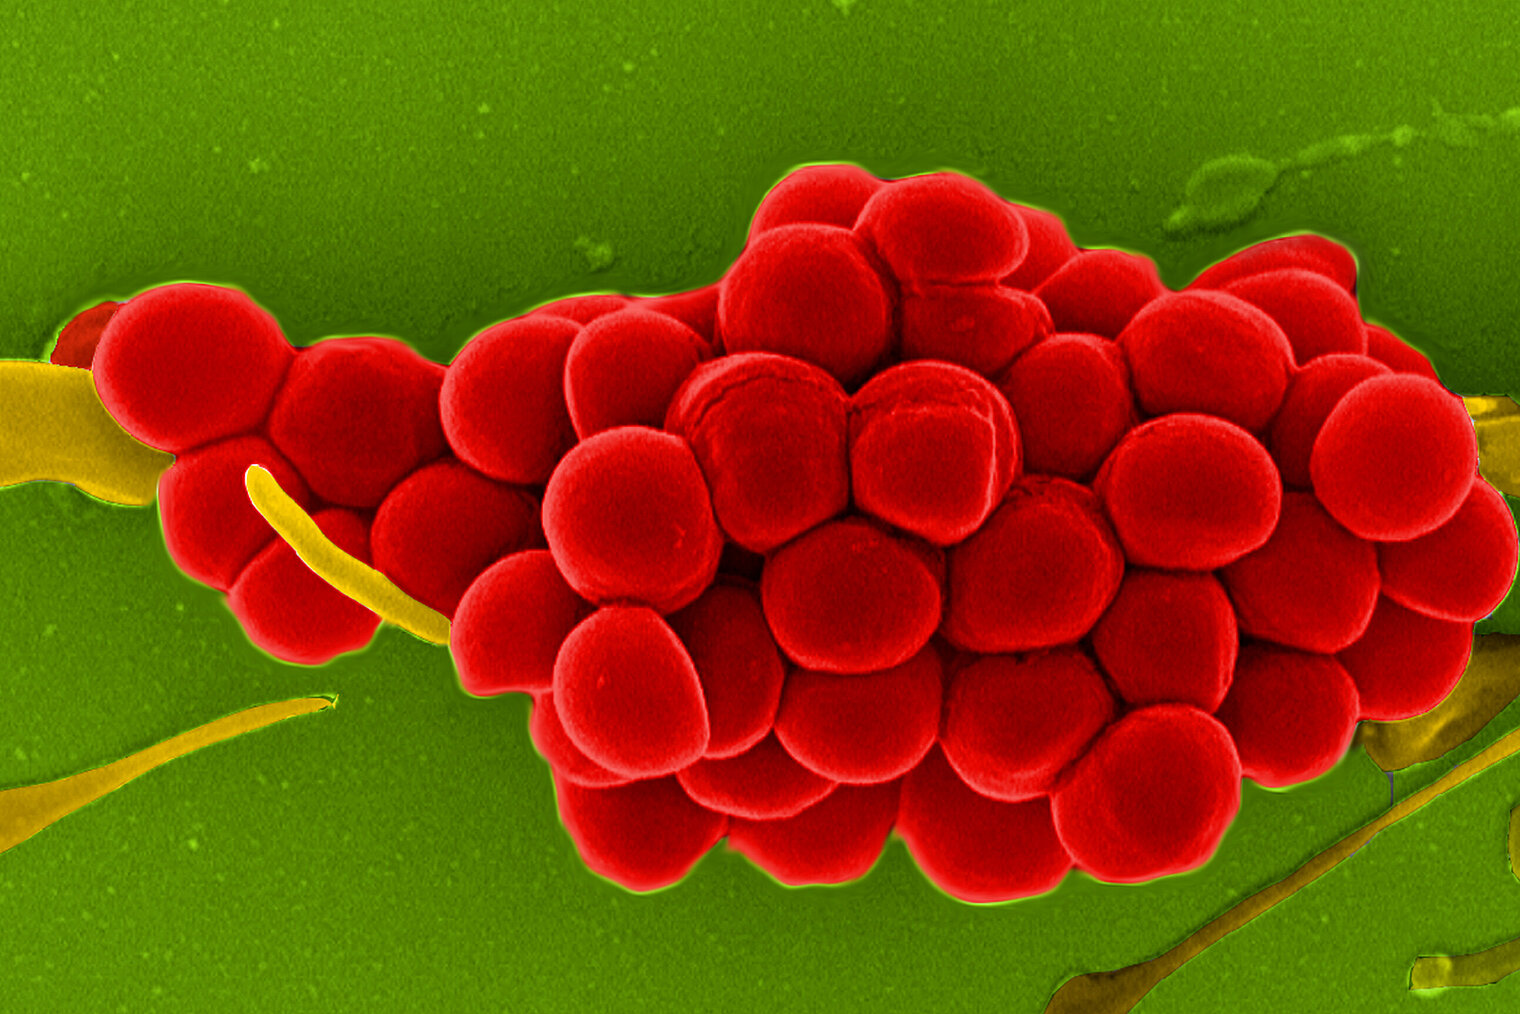 Electron micrograph of S. aureus